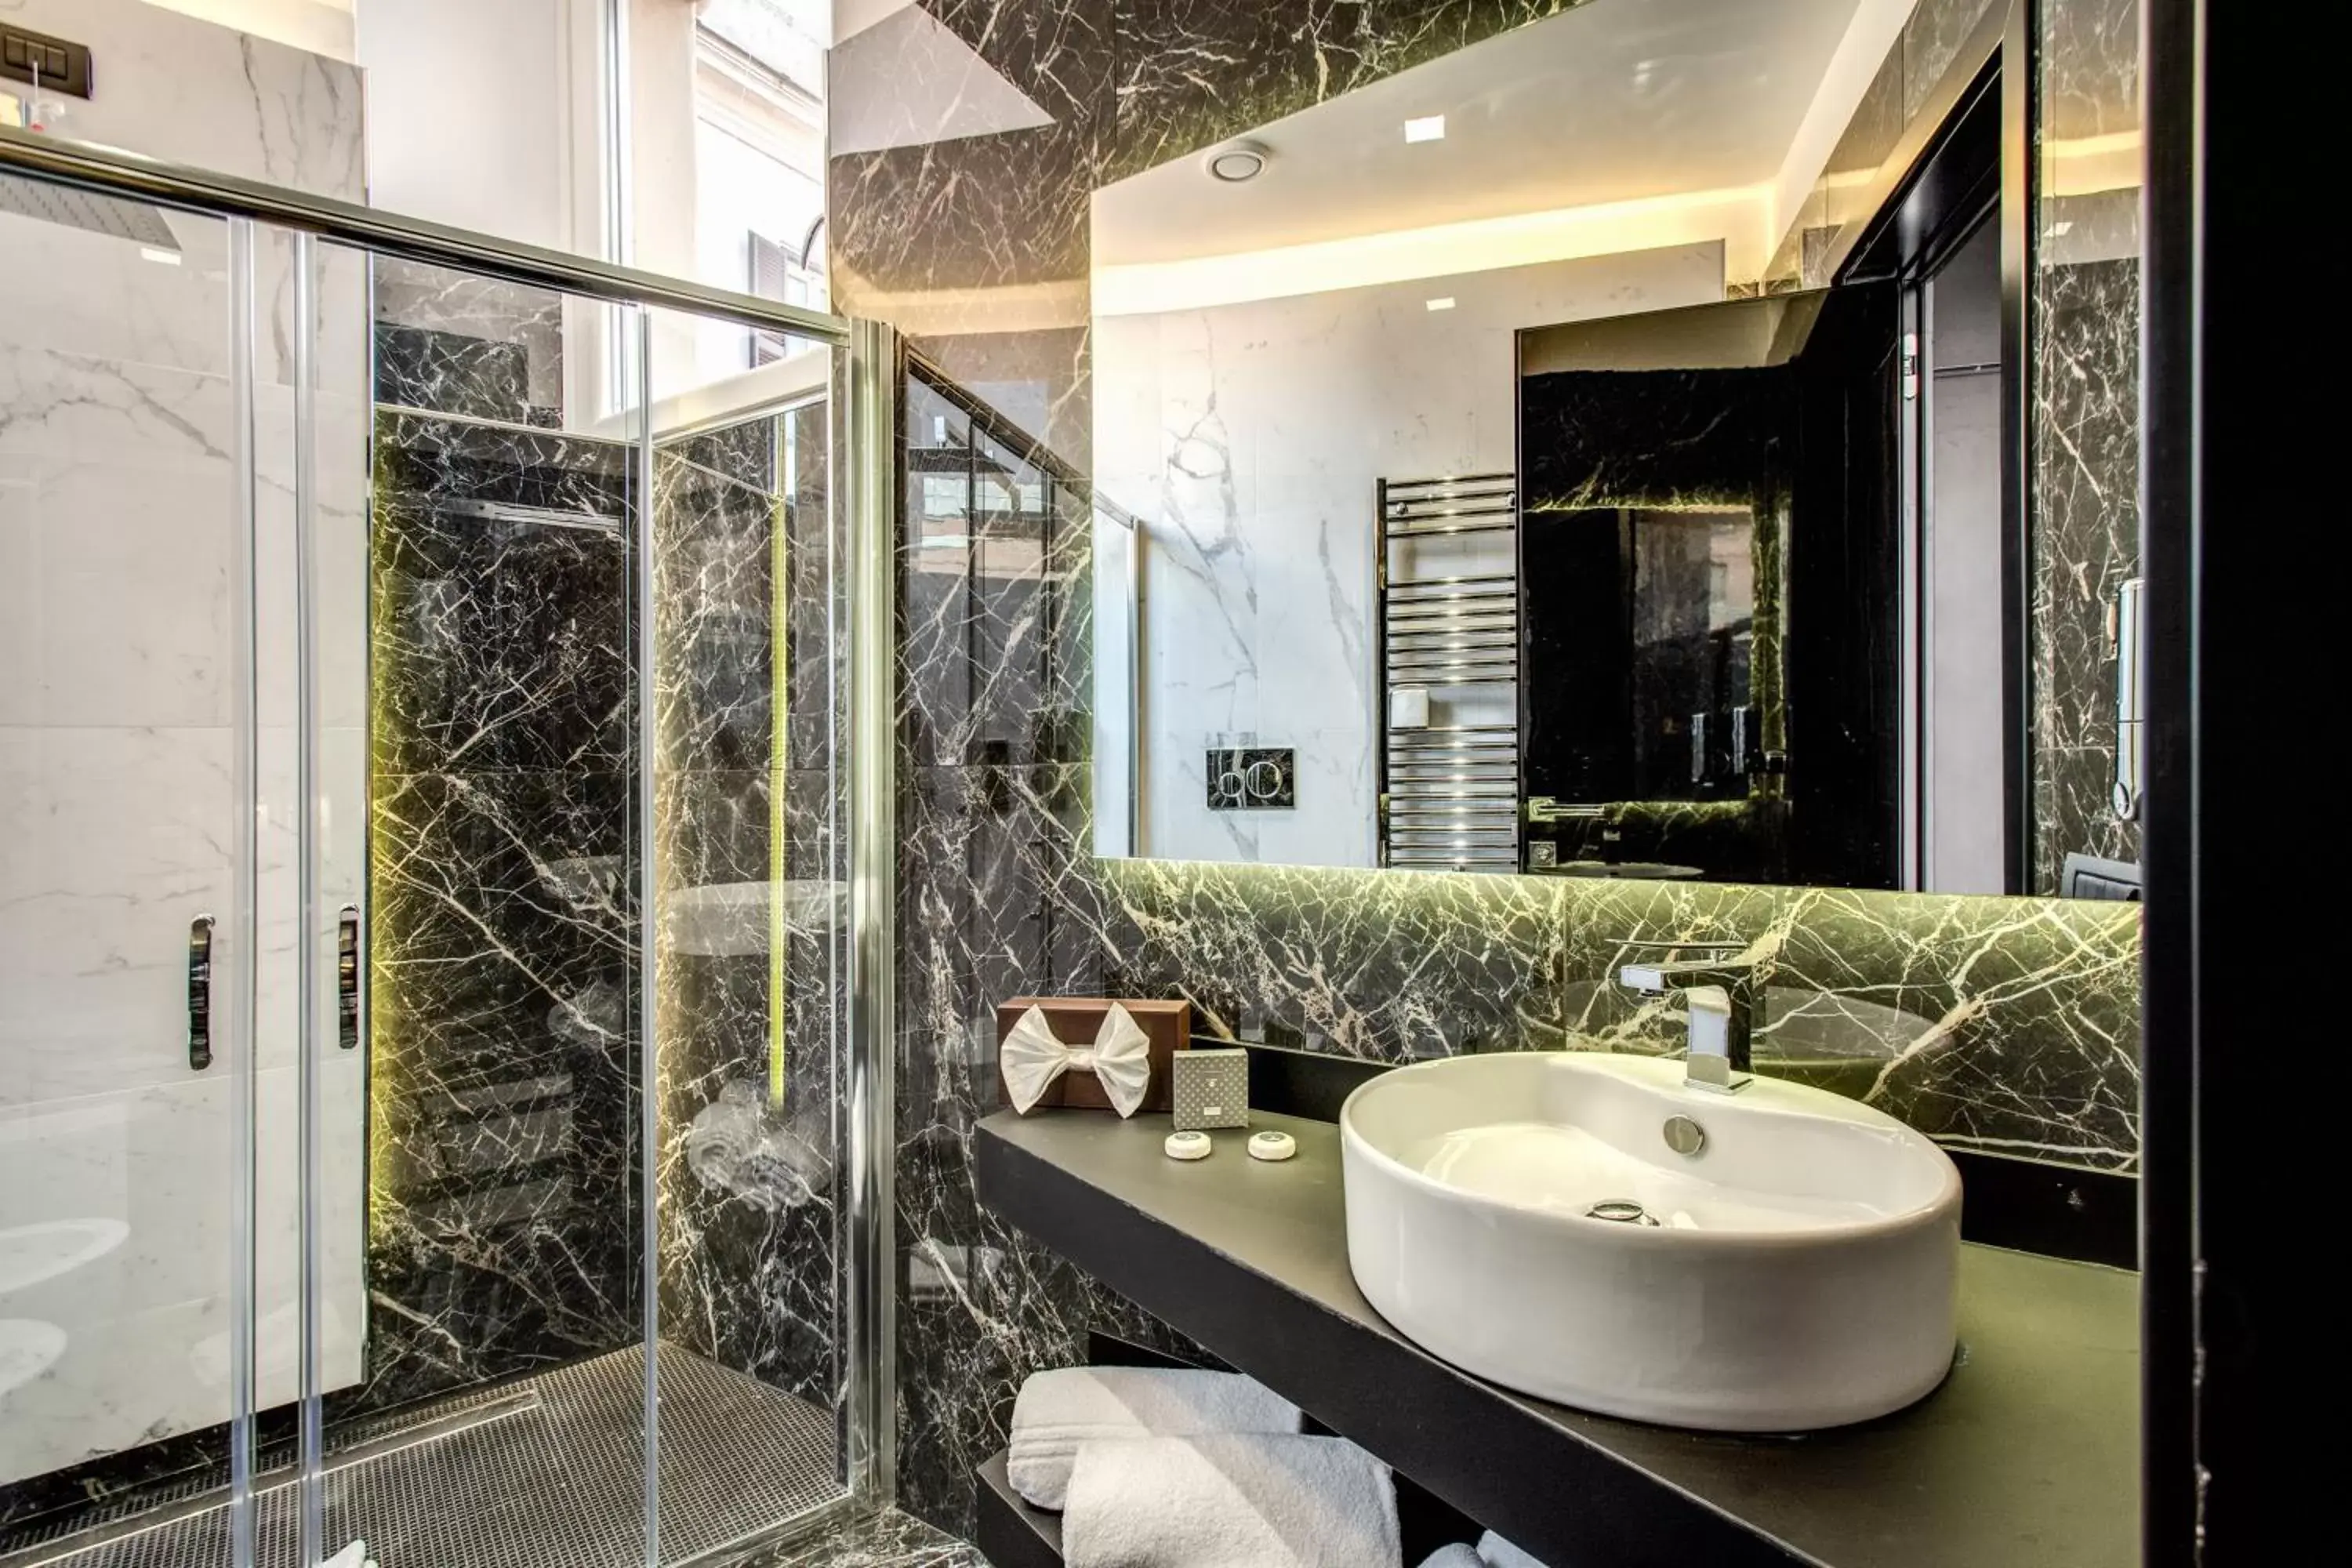 Bathroom in Doria Palace Boutique Hotel